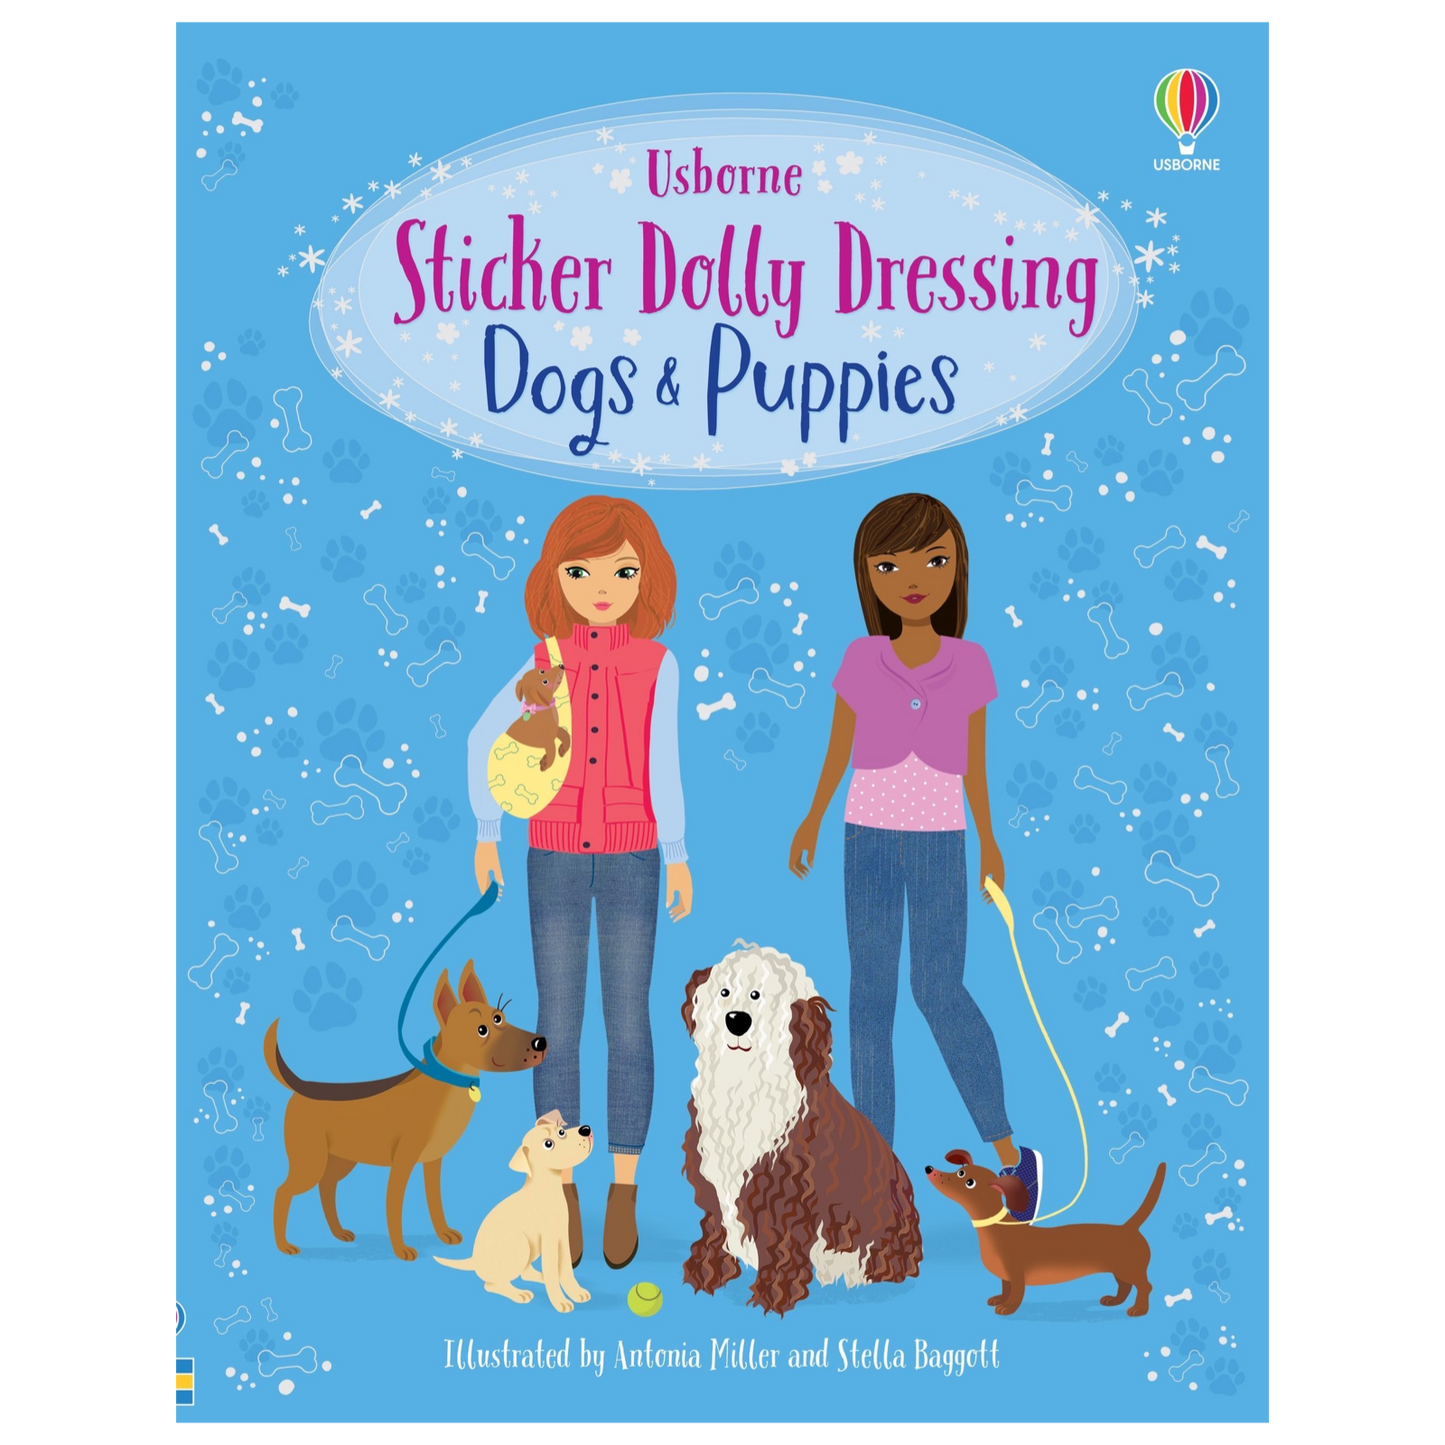 UB Sticker Dolly Dressing Book